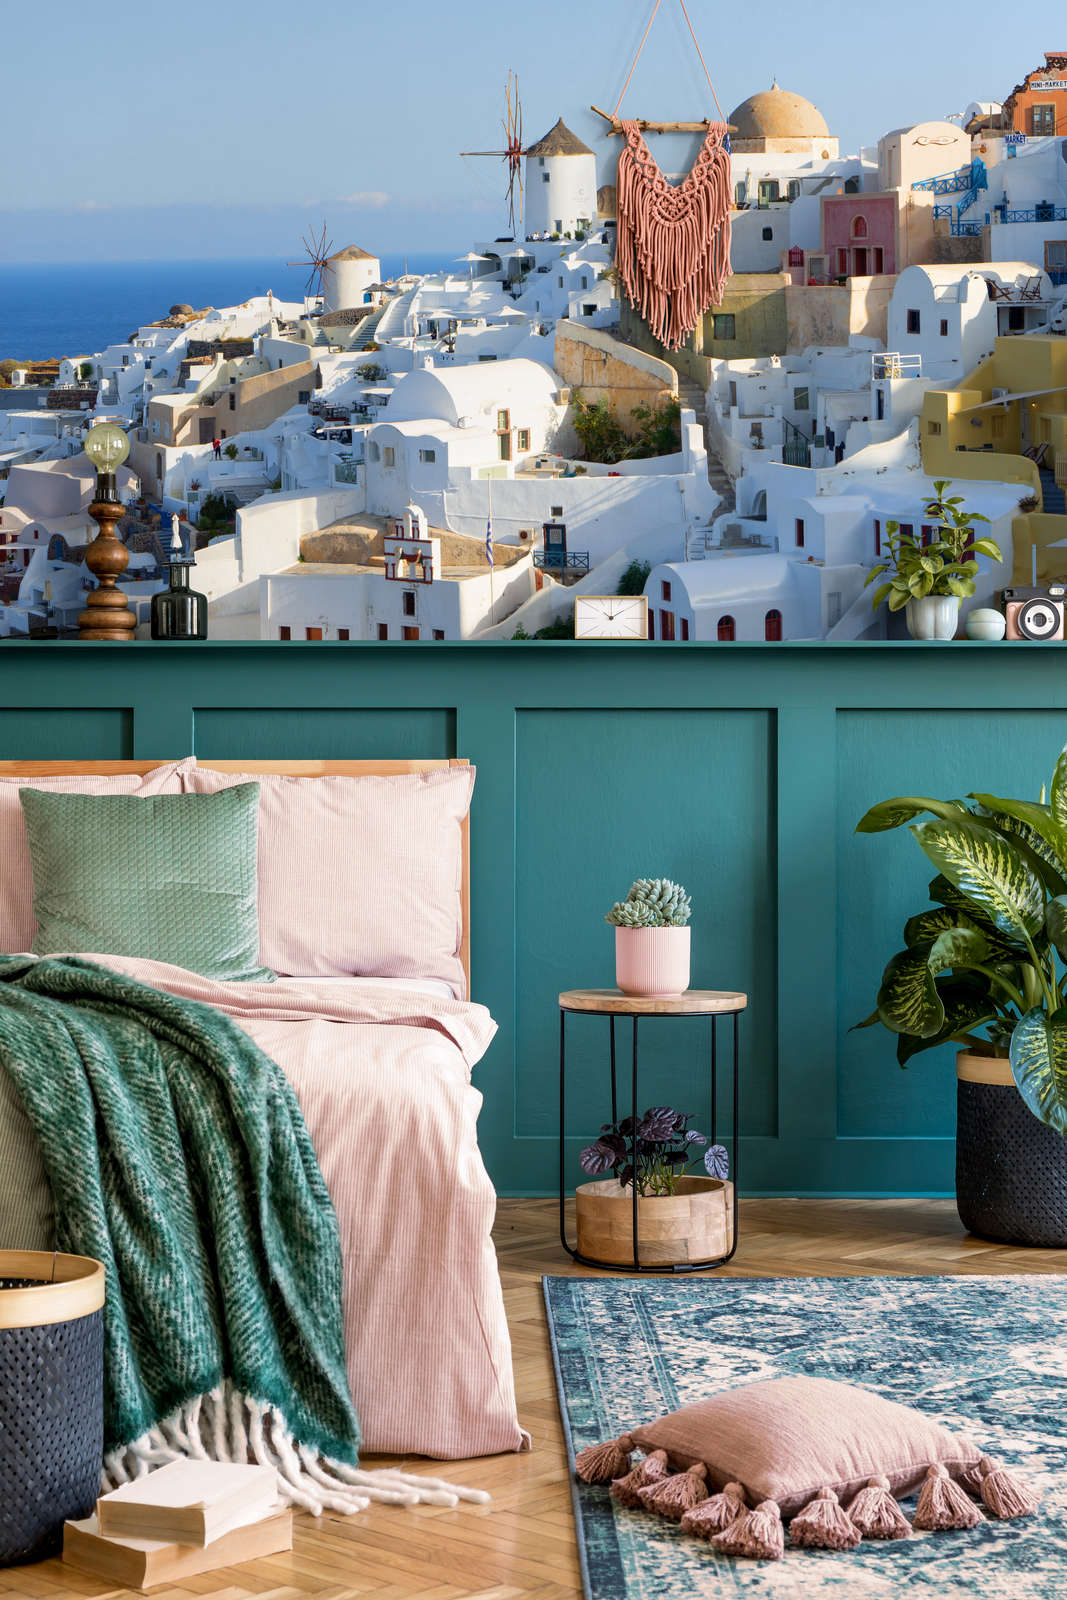             Photo wallpaper Santorini's narrow alleys - Premium smooth fleece
        